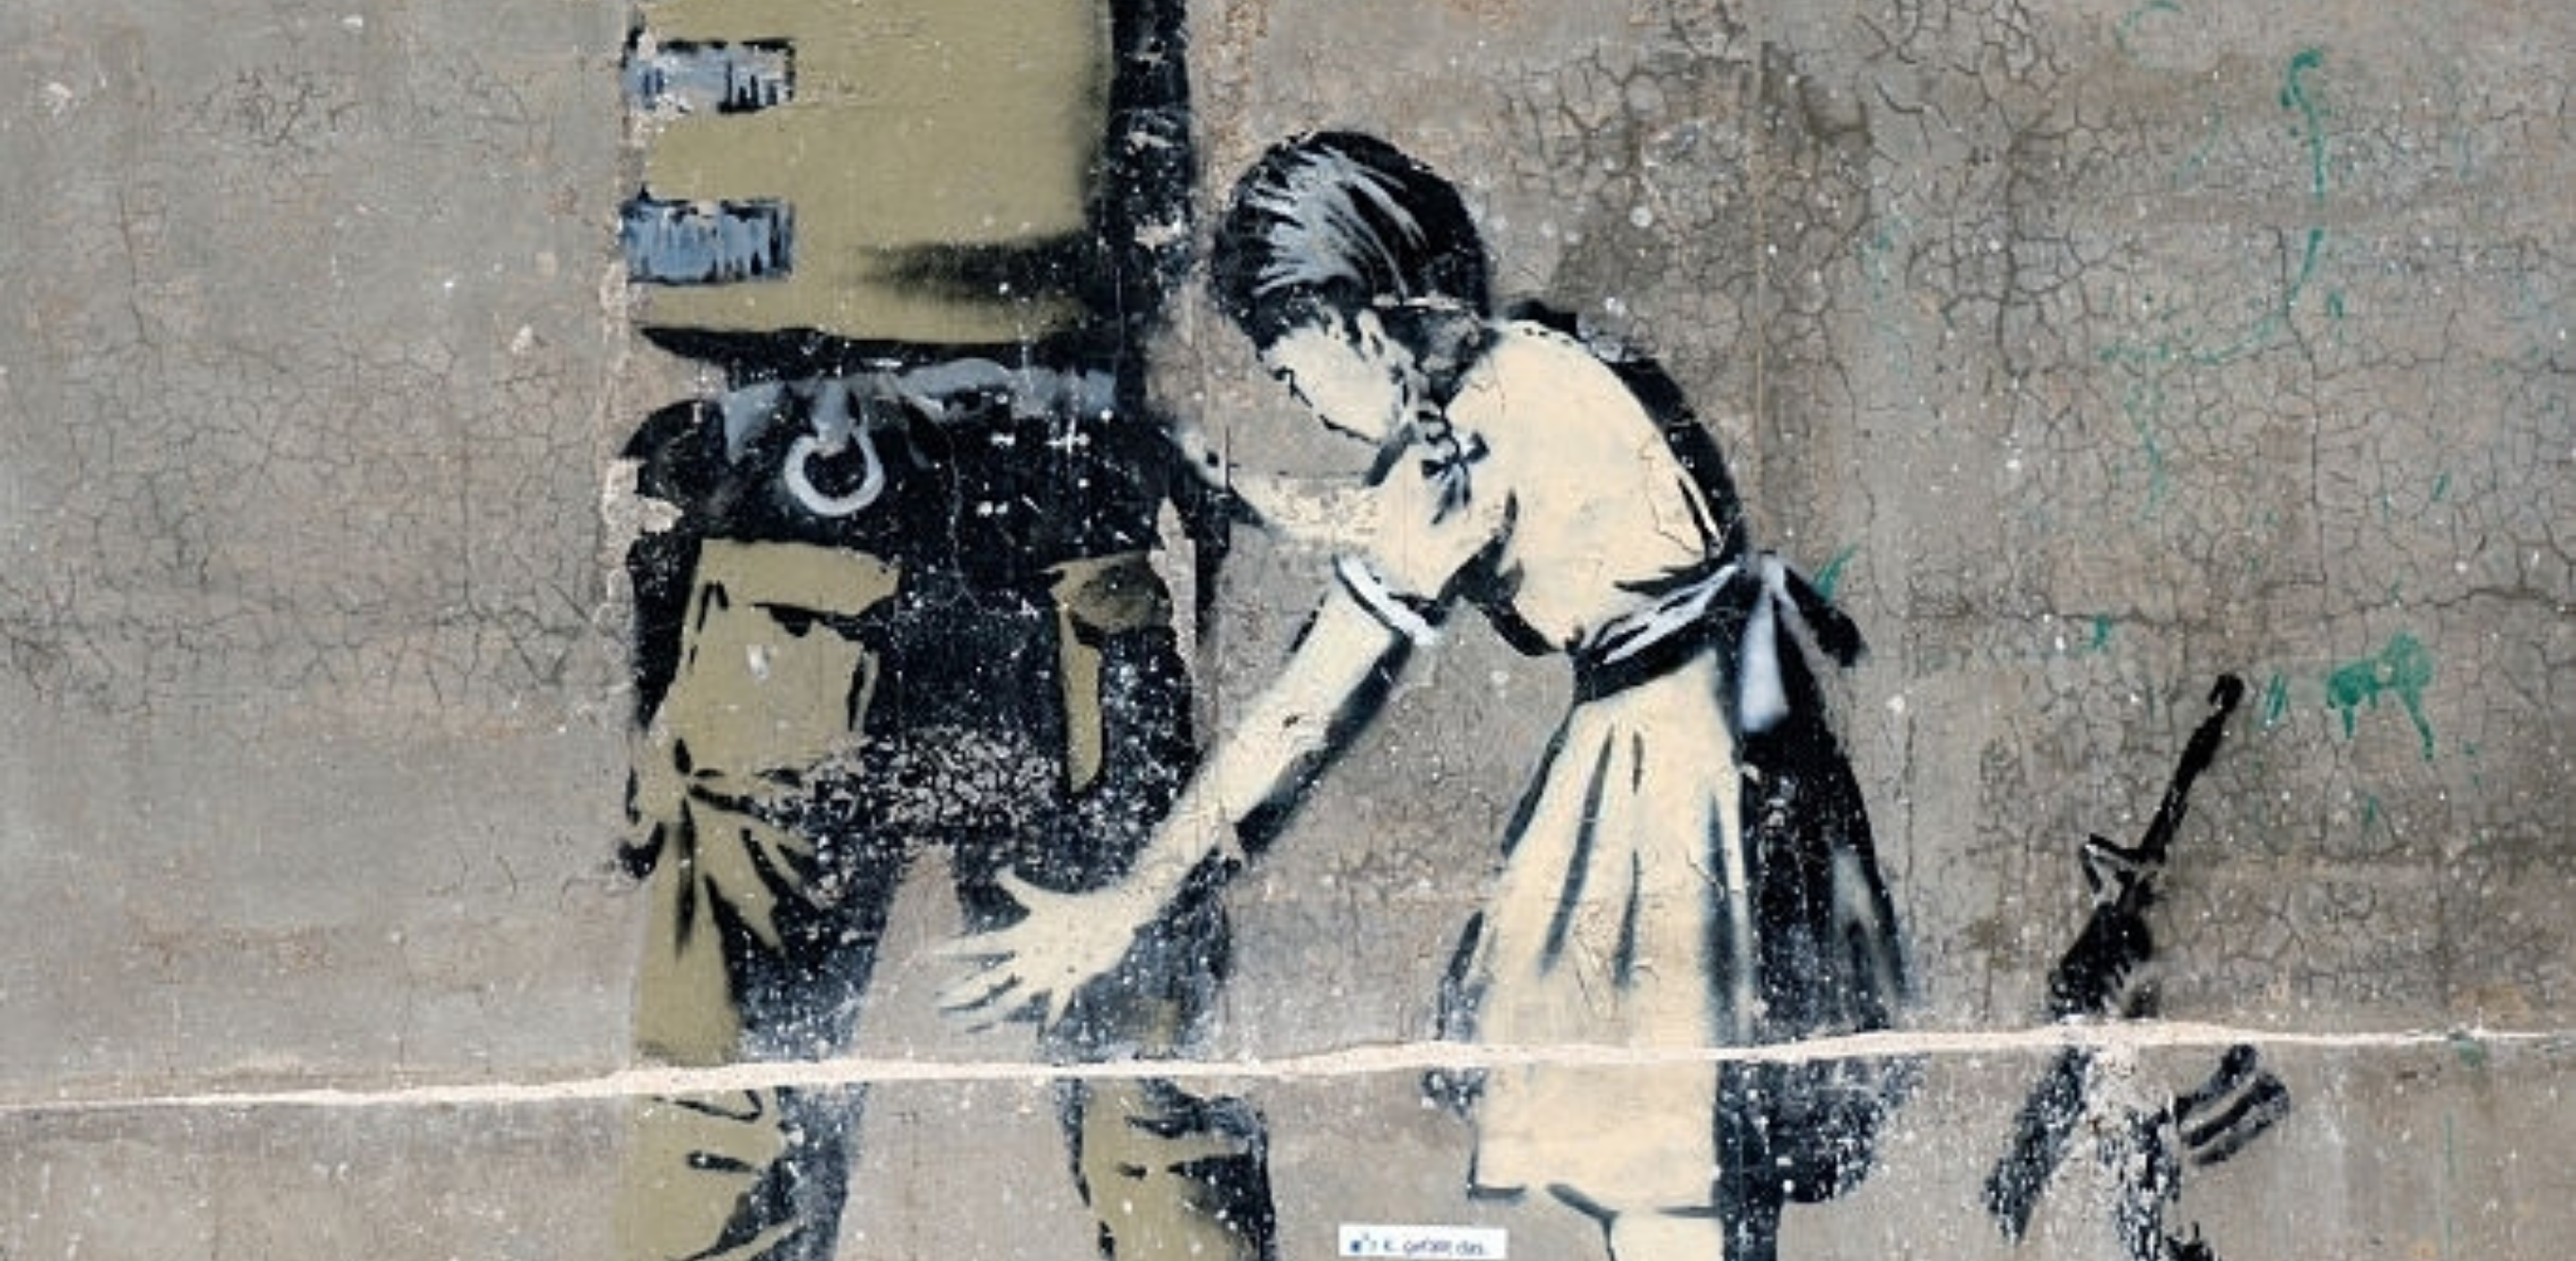 Les œuvres les plus connues de Banksy pour réveiller les consciences